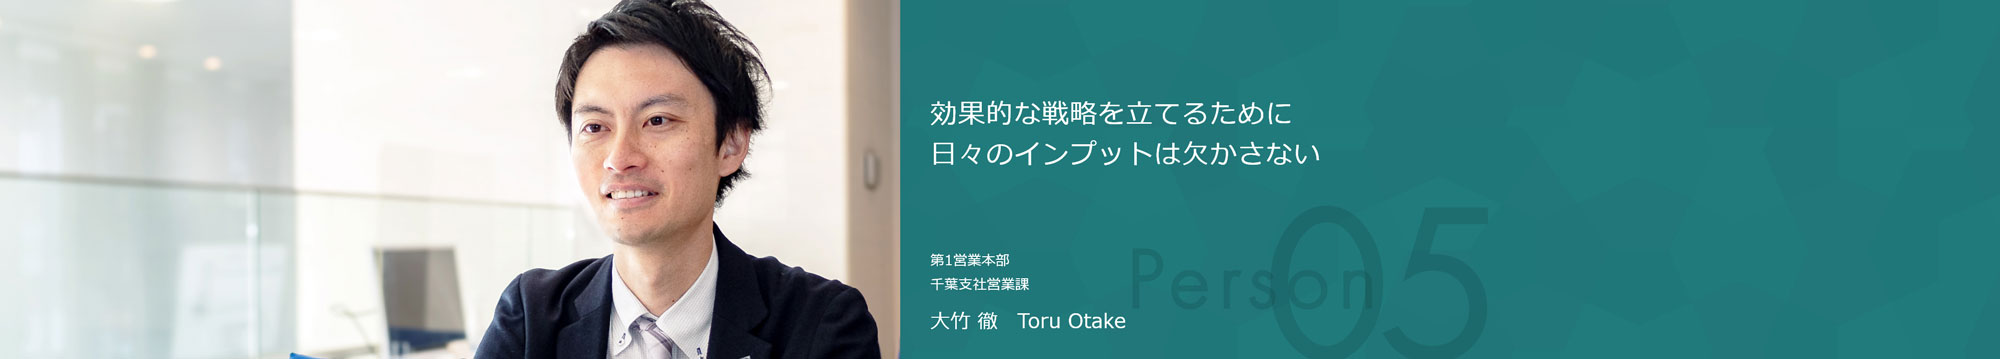 効果的な戦略を立てるために日々のインプットは欠かさない 第1営業本部 千葉支社営業課 大竹 徹 Toru Otake